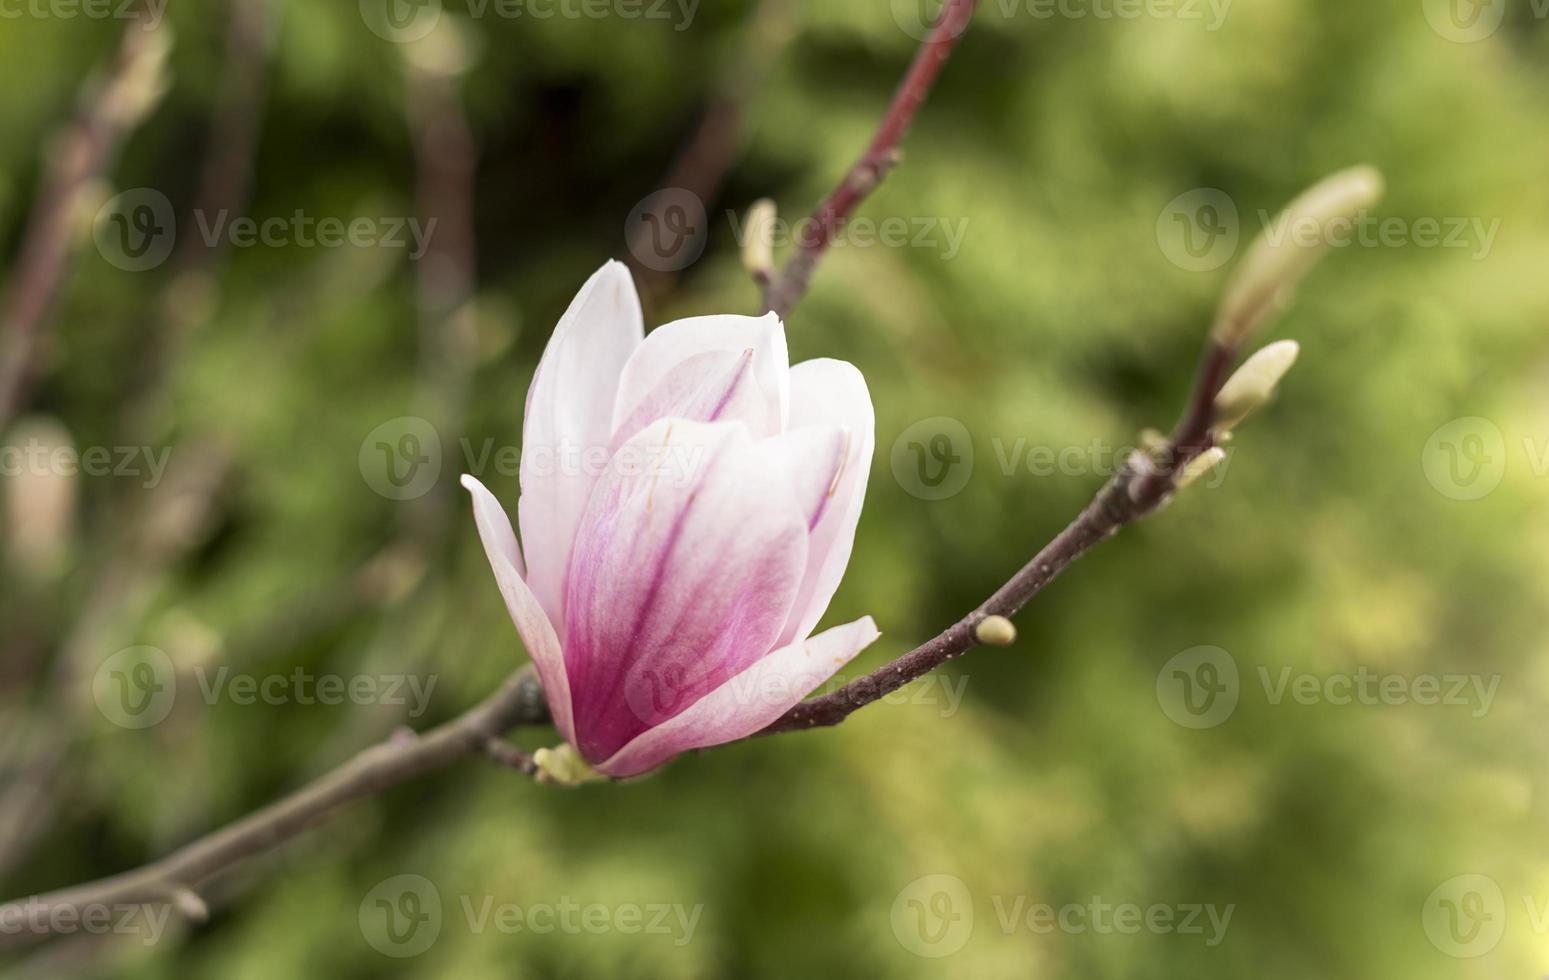 germoglio di rosa magnolia fiore su albero ramo e verde mini cuffie su naturale sfondo all'aperto primavera e fioritura impianti paesaggio giardinaggio foto